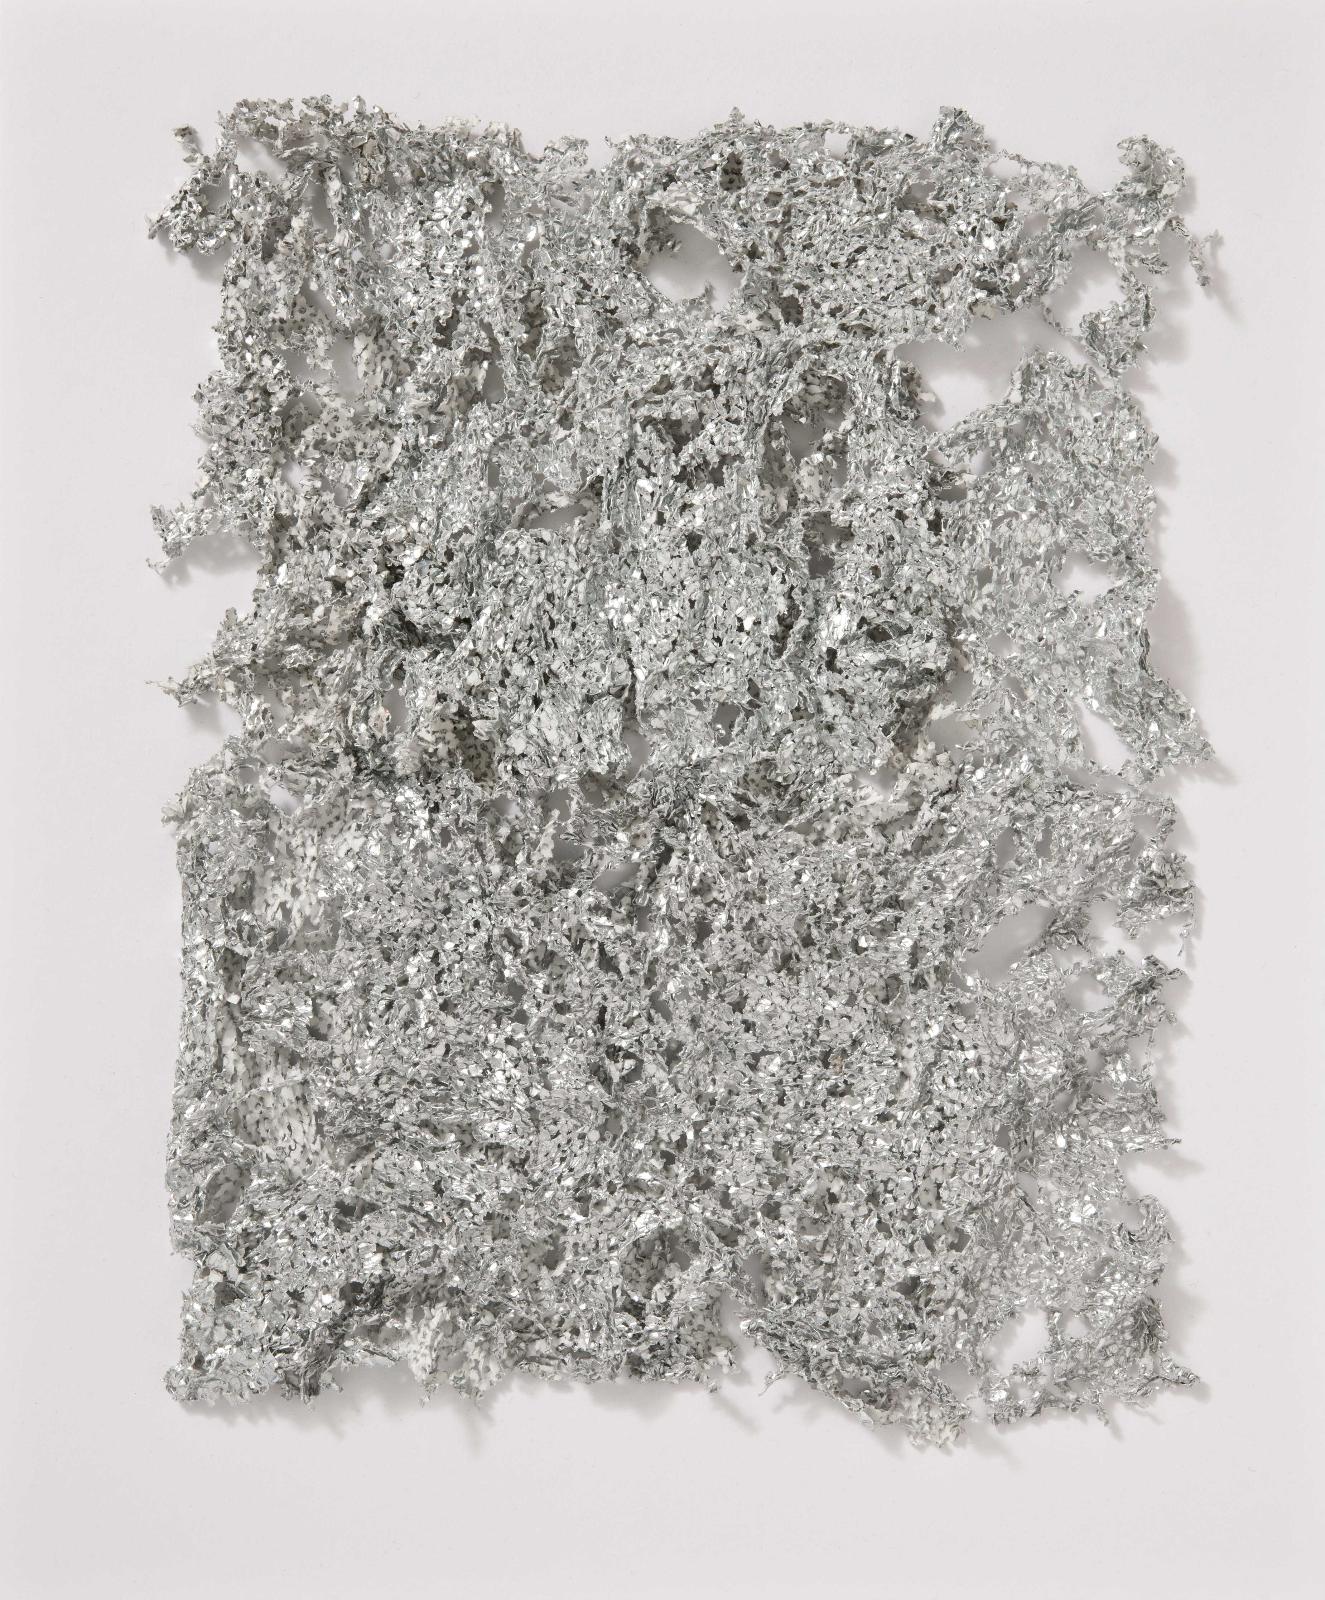 Martin Bruno Schmid, Bohrzeichnung, 2012, Bleistiftbohrung in aluminiumbedampftes Papier, 48 cm x 38 cm, gerahmt, Preis auf Anfrage